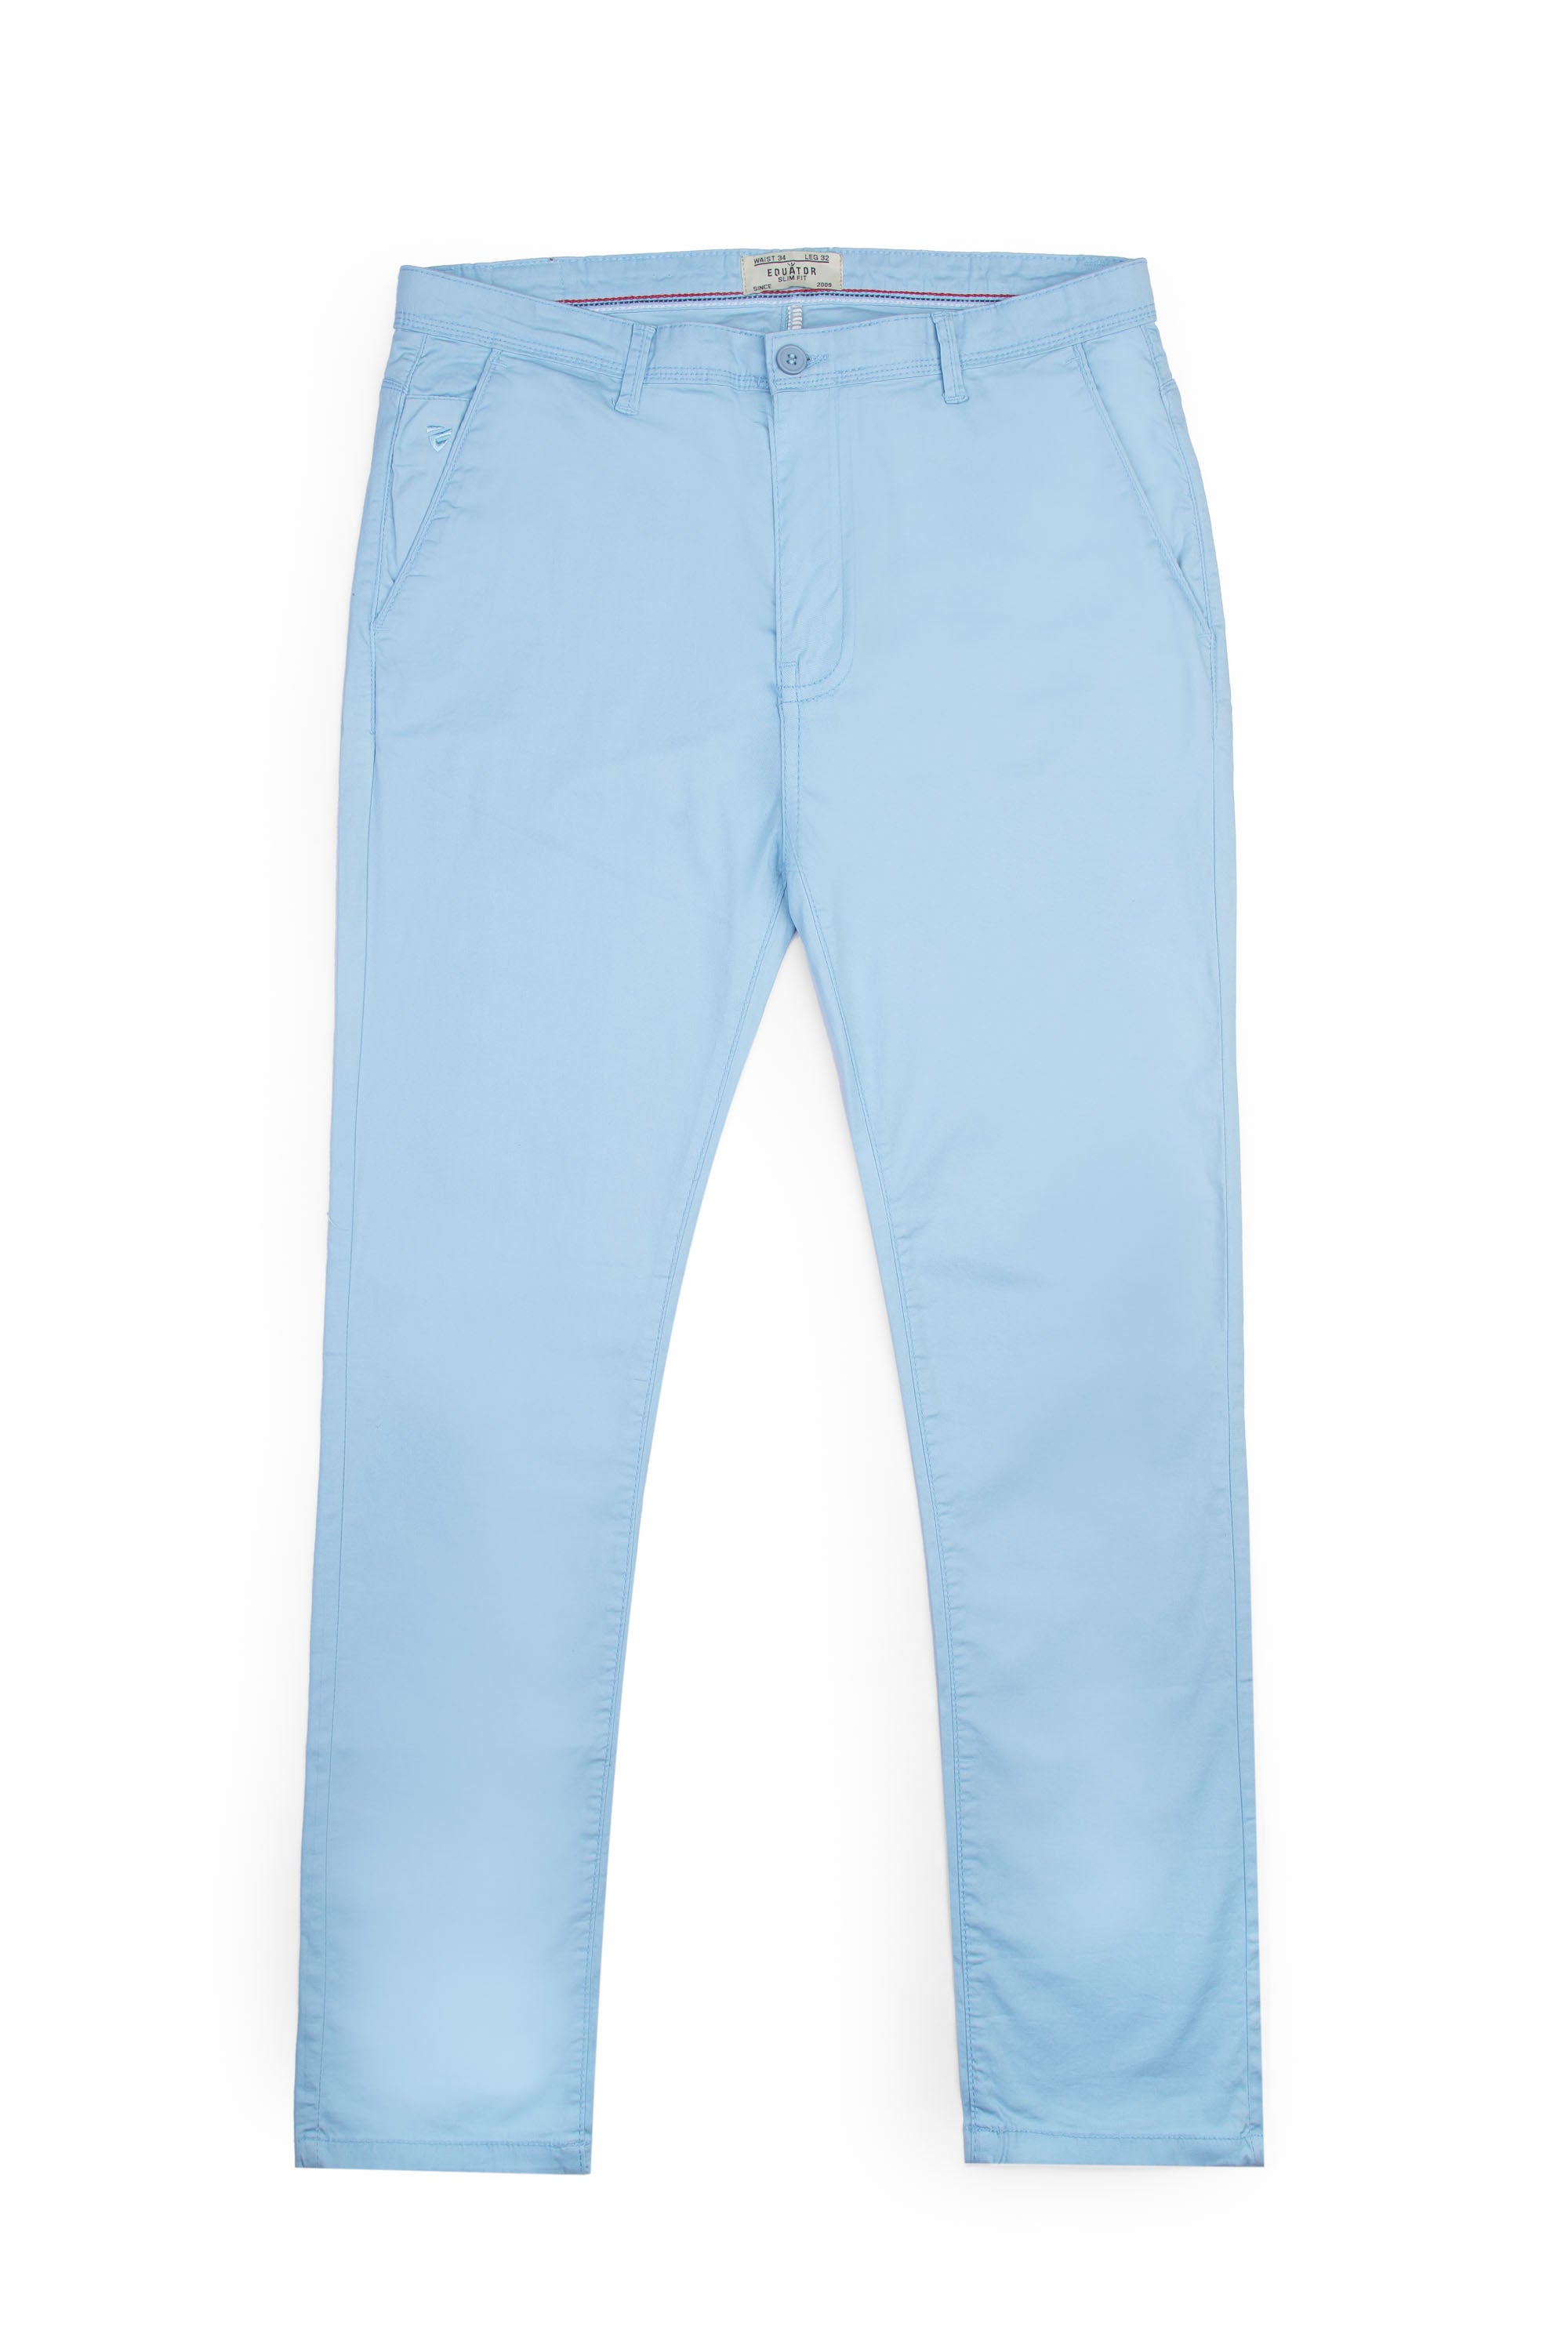 Sky Blue Cotton Pants